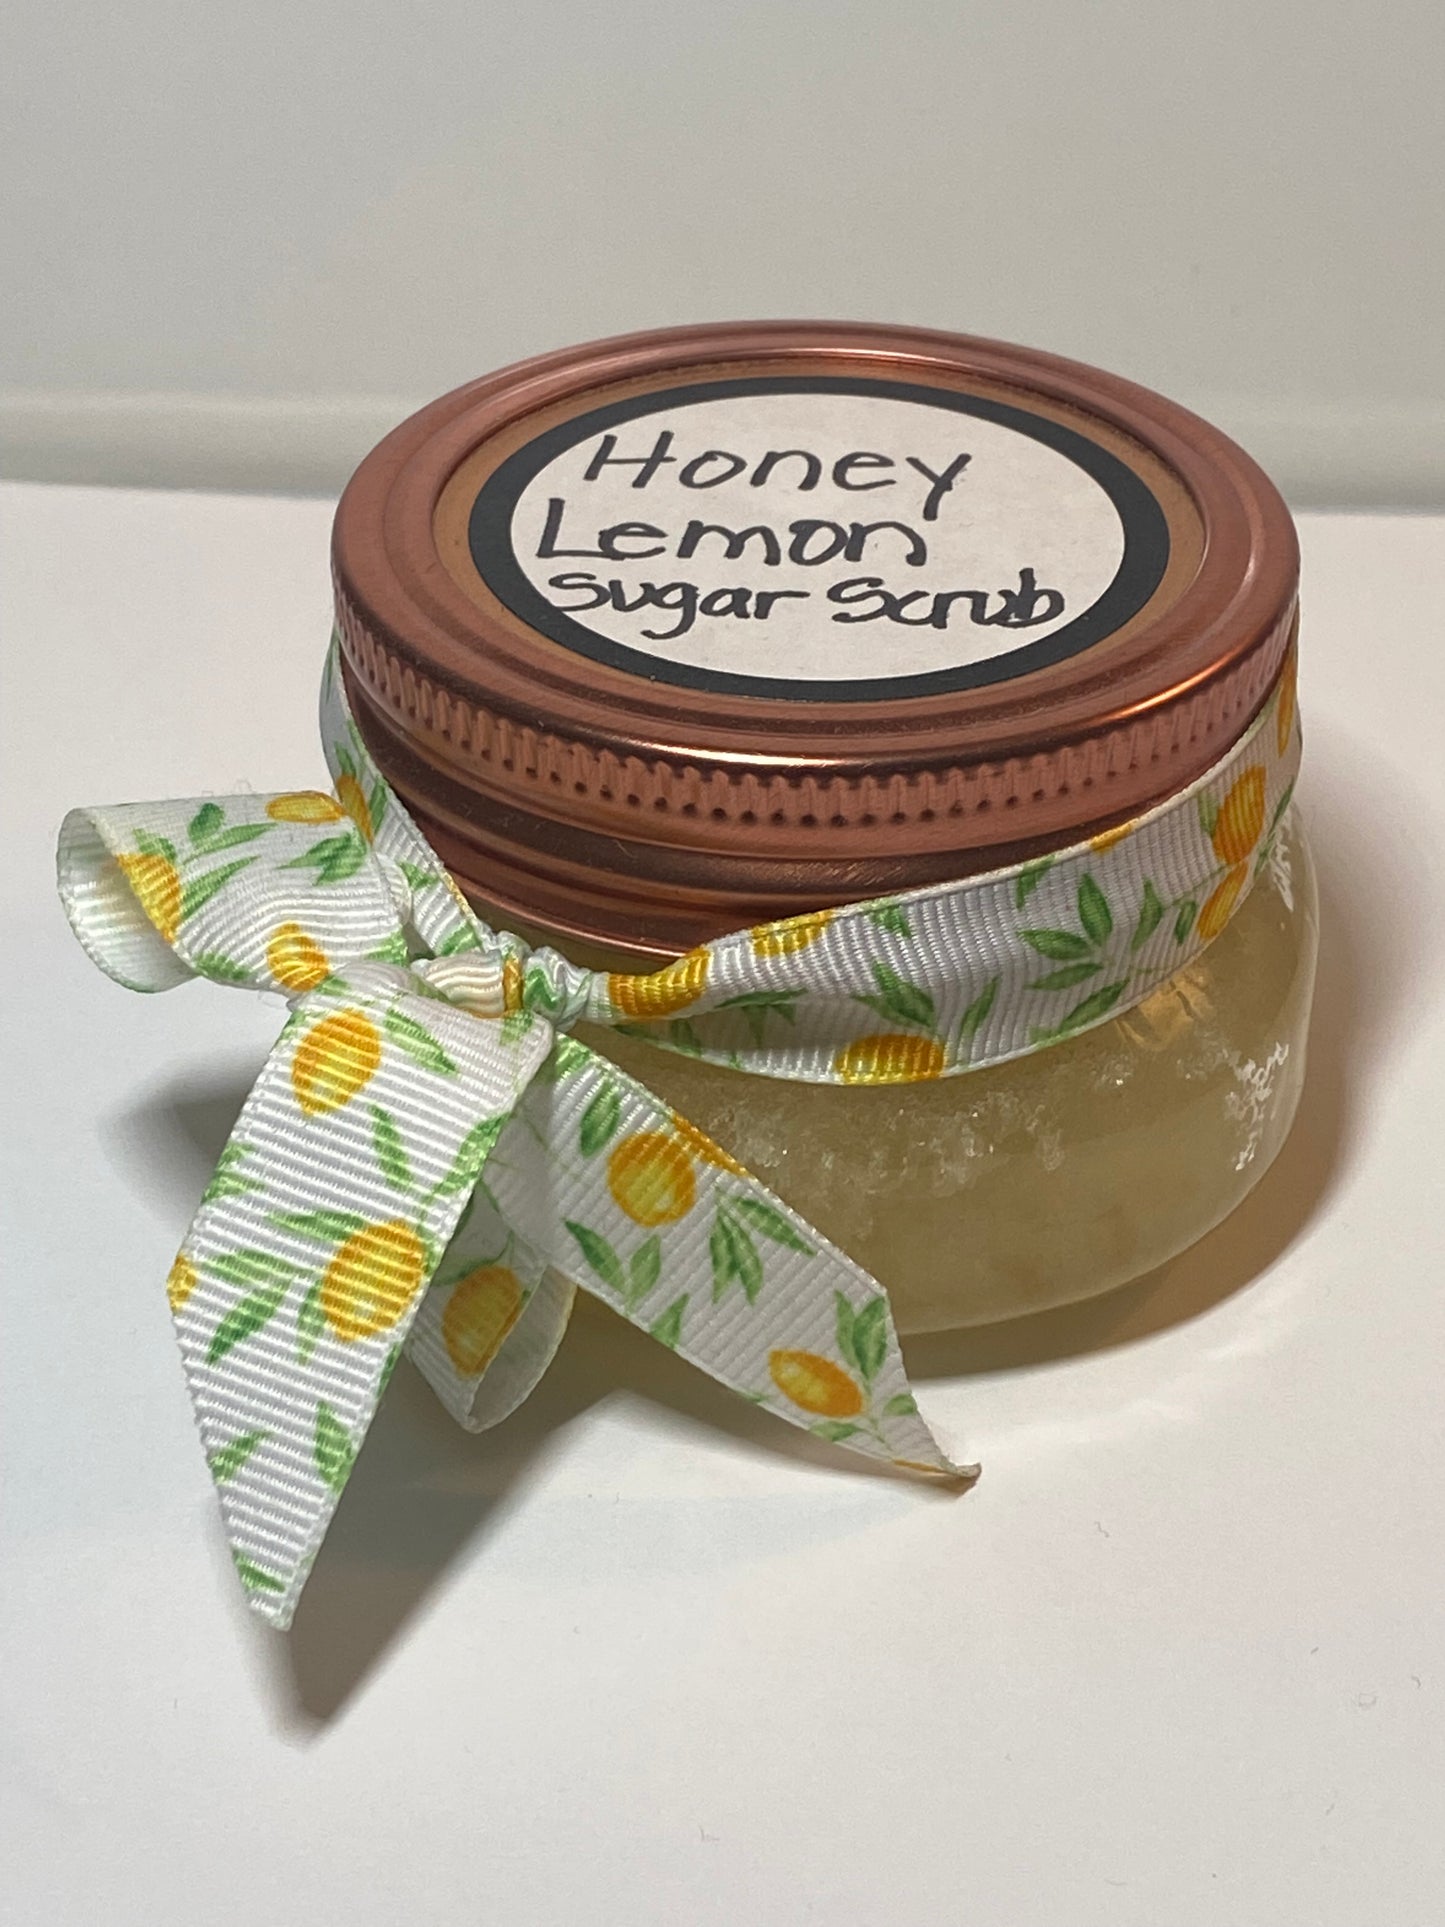 Honey Lemon Sugar Scrub